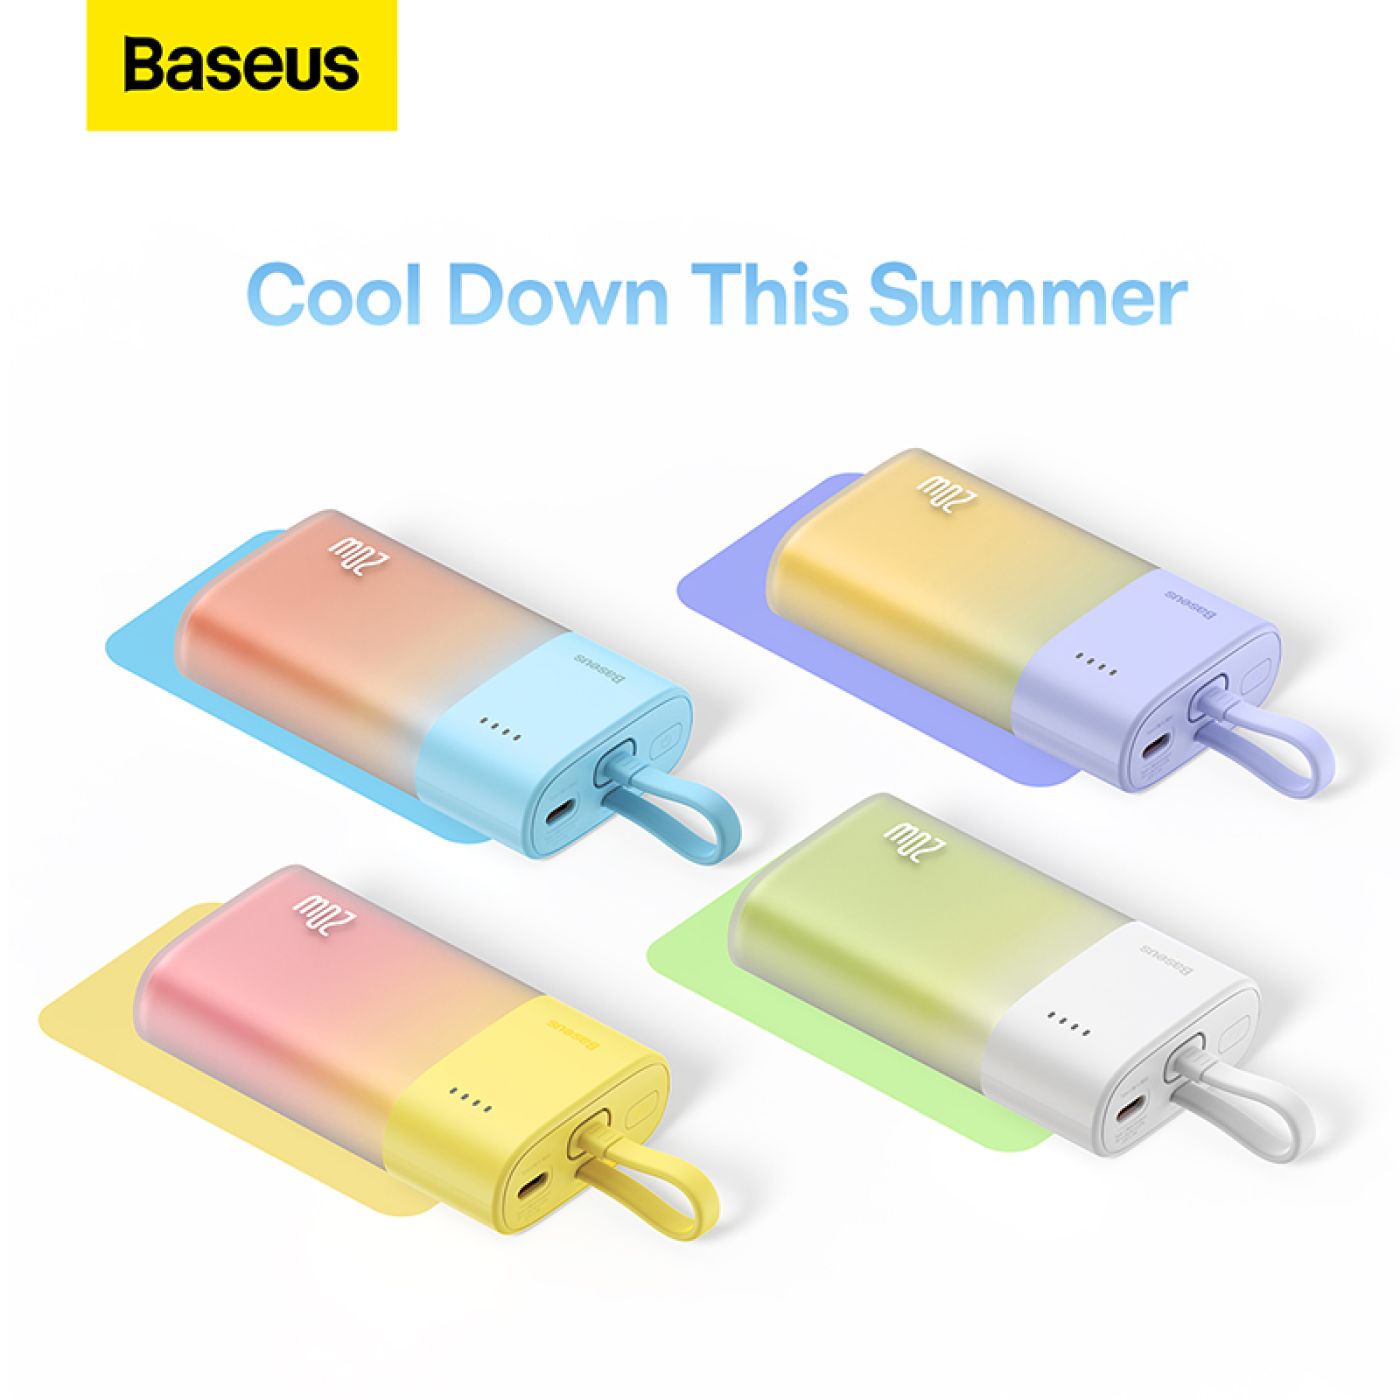 Sạc Dự Phòng OS-Baseus Popsicle Fast Charging Power Bank 5200mAh 20W